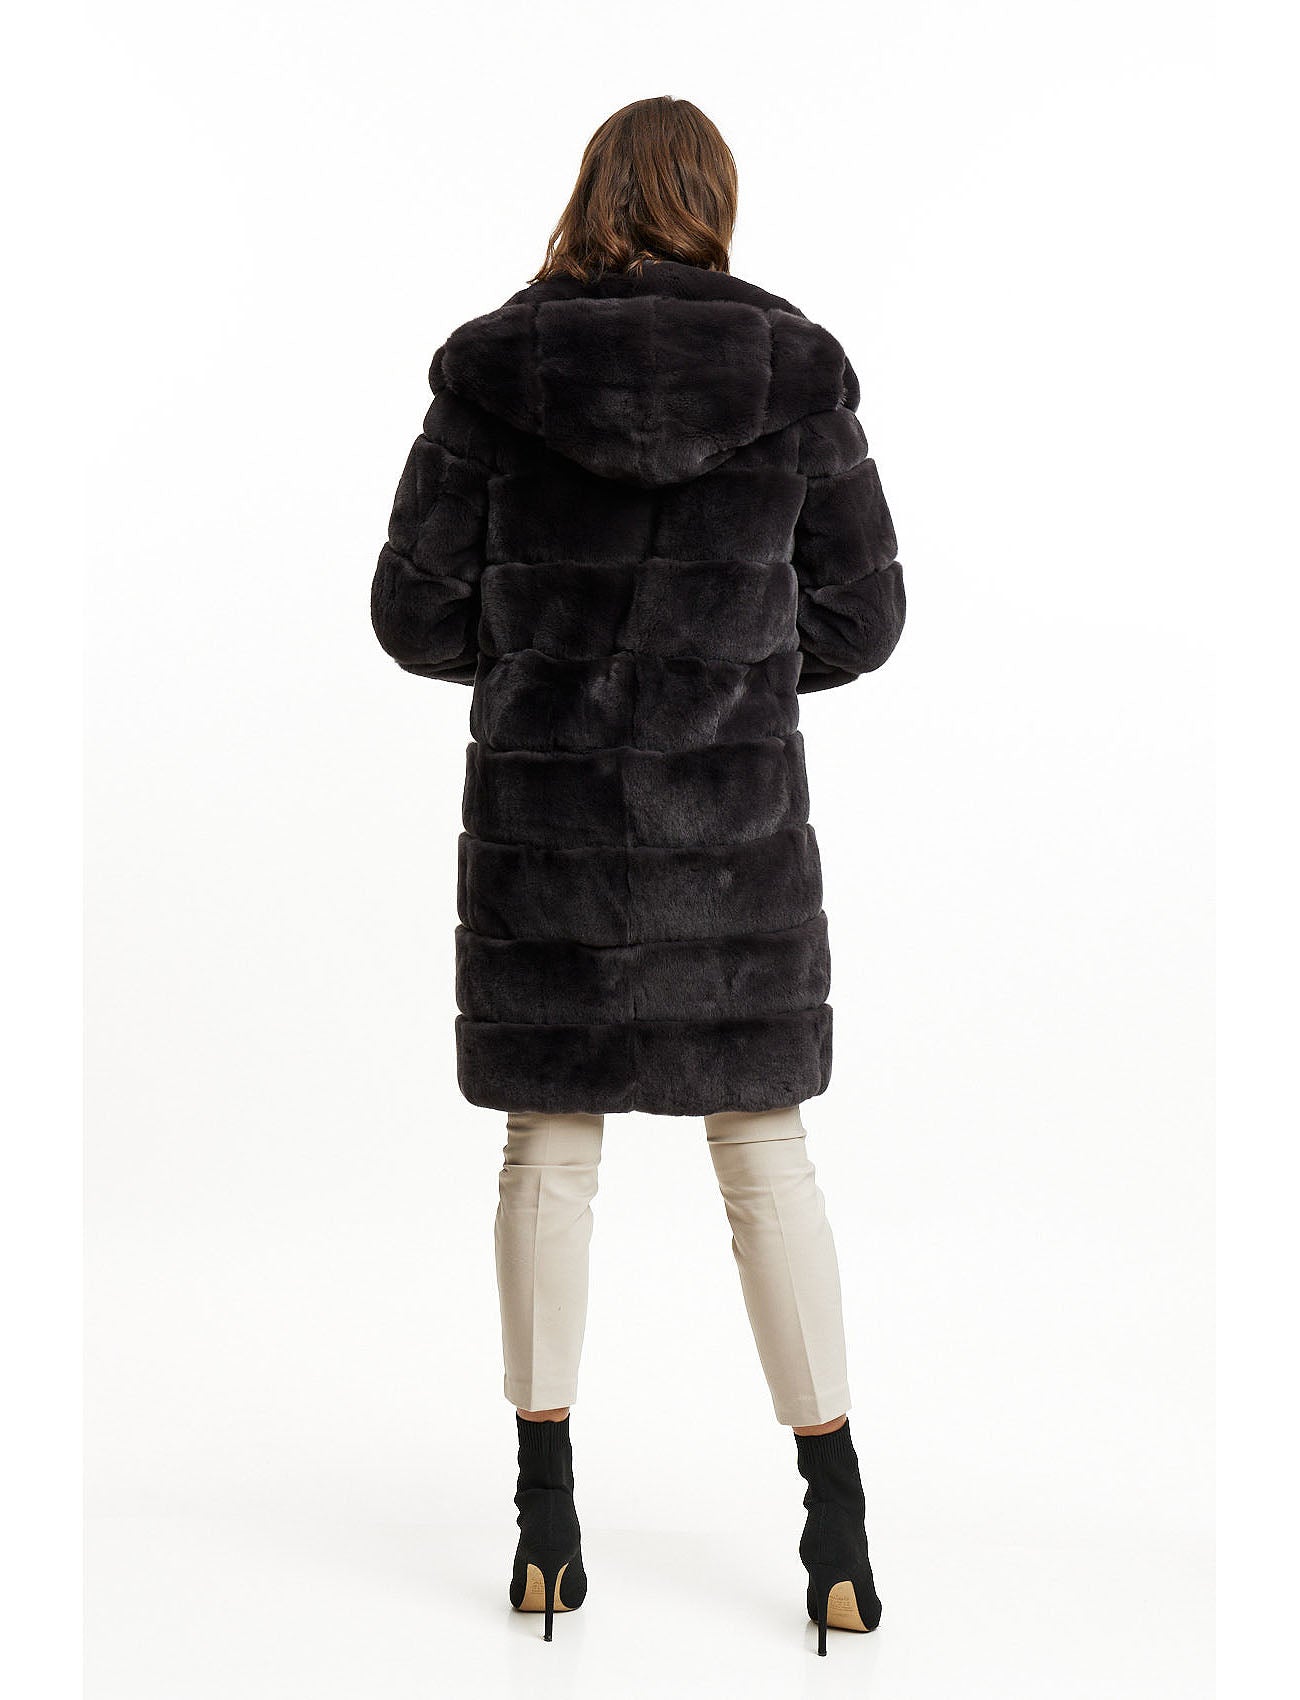 Fur jacket with hood - basalt grey